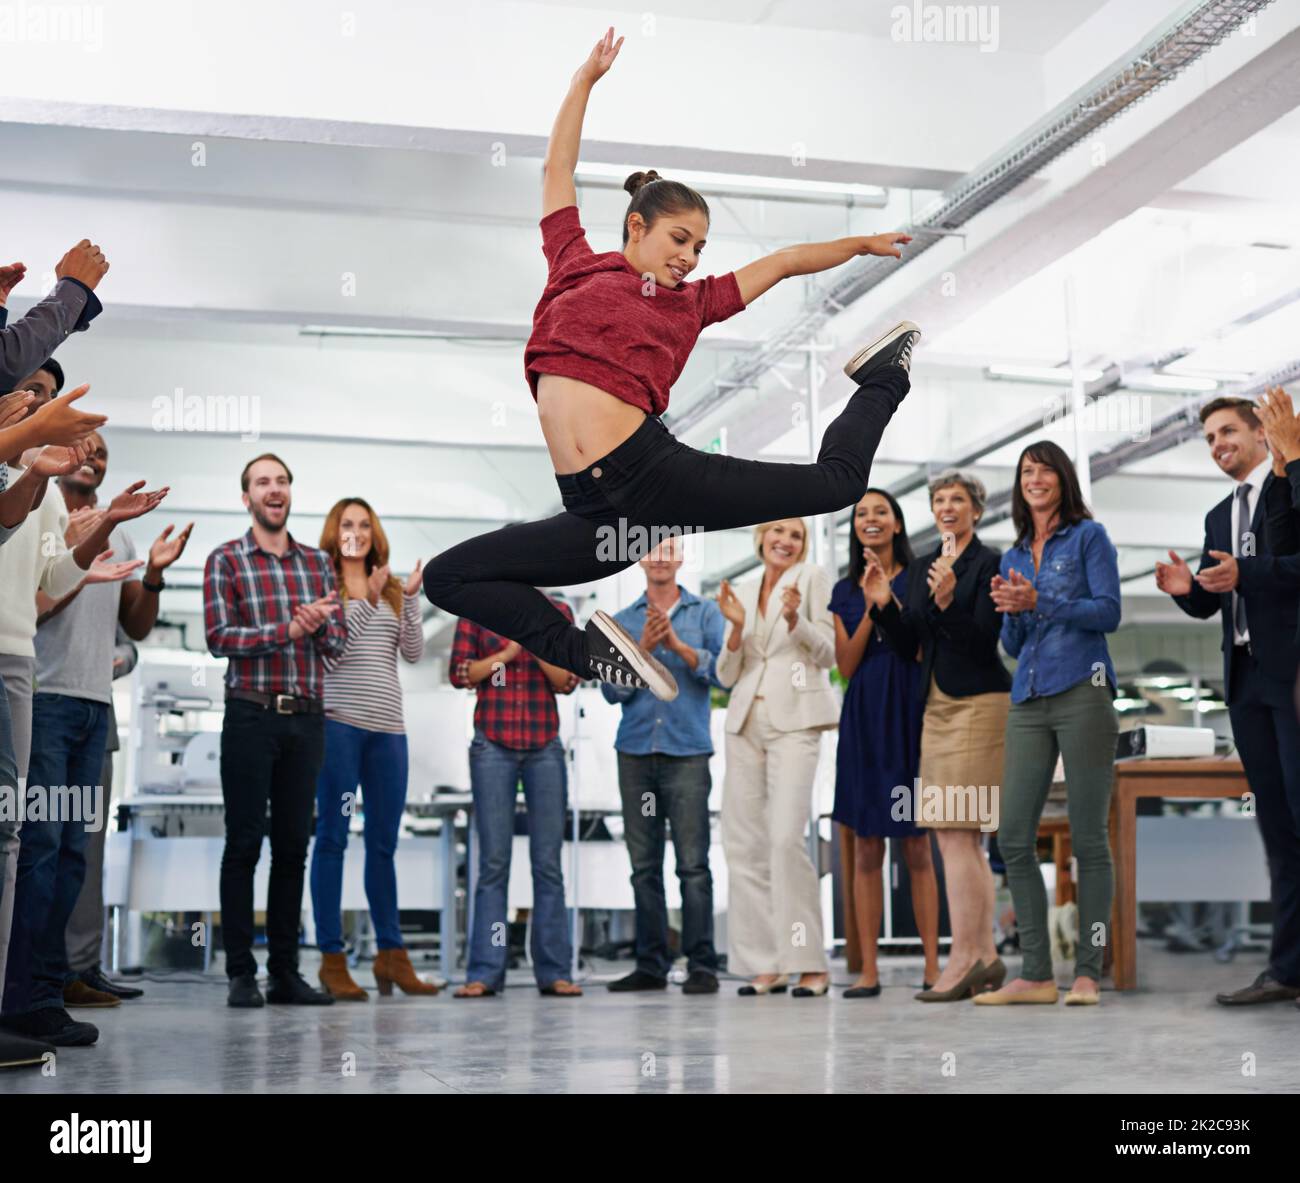 Travaillez dur et Amuse-toi bien. Photo rognée d'une fête de bureau avec des personnes dansant et ayant un bon moment. Banque D'Images